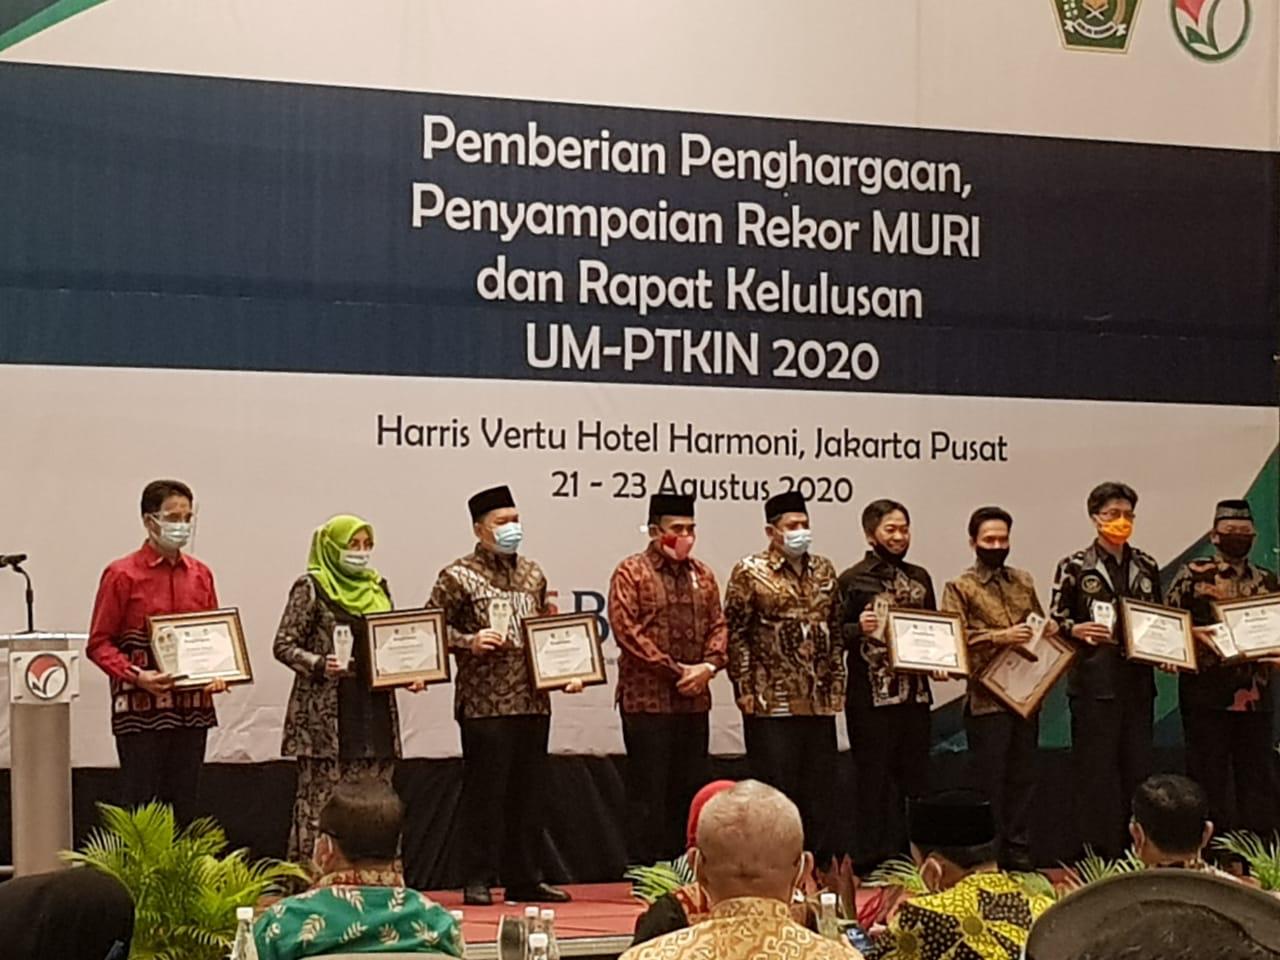 Gambar Miliki Pendaftar Terbanyak di UM-PTKIN 2020, UIN Alauddin Raih Penghargaan Menteri Agama RI